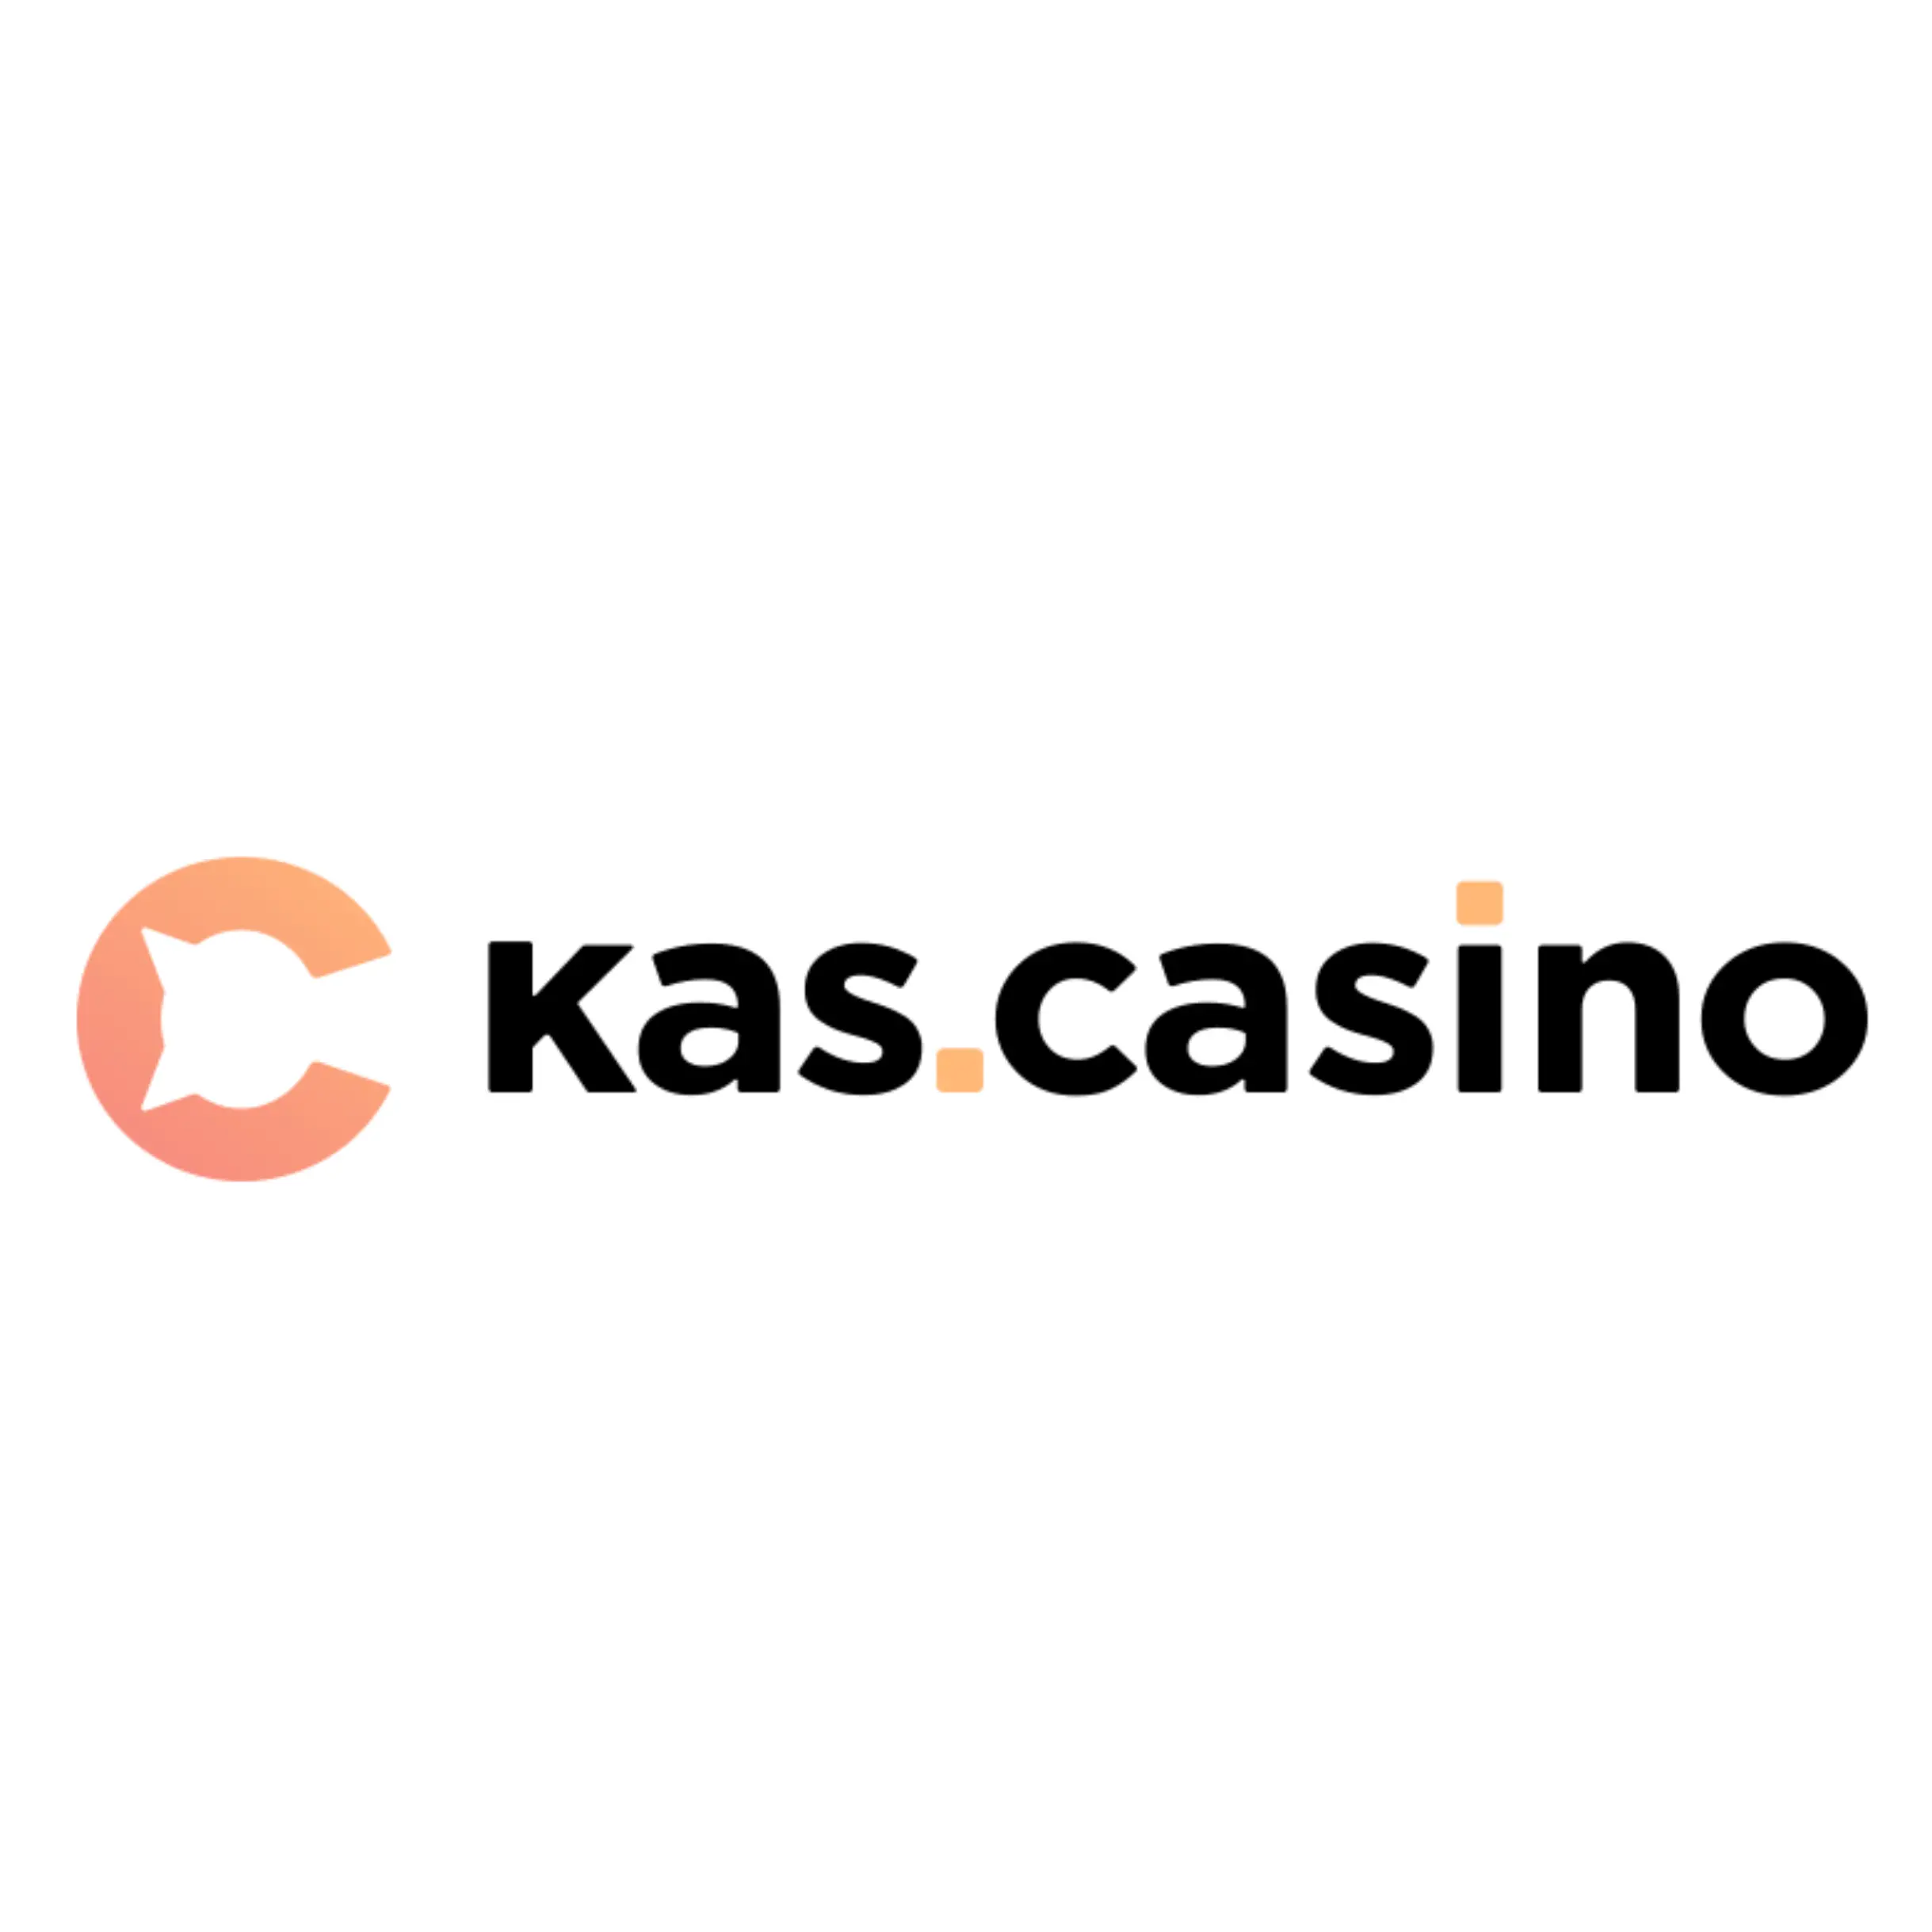 kascasino-logo